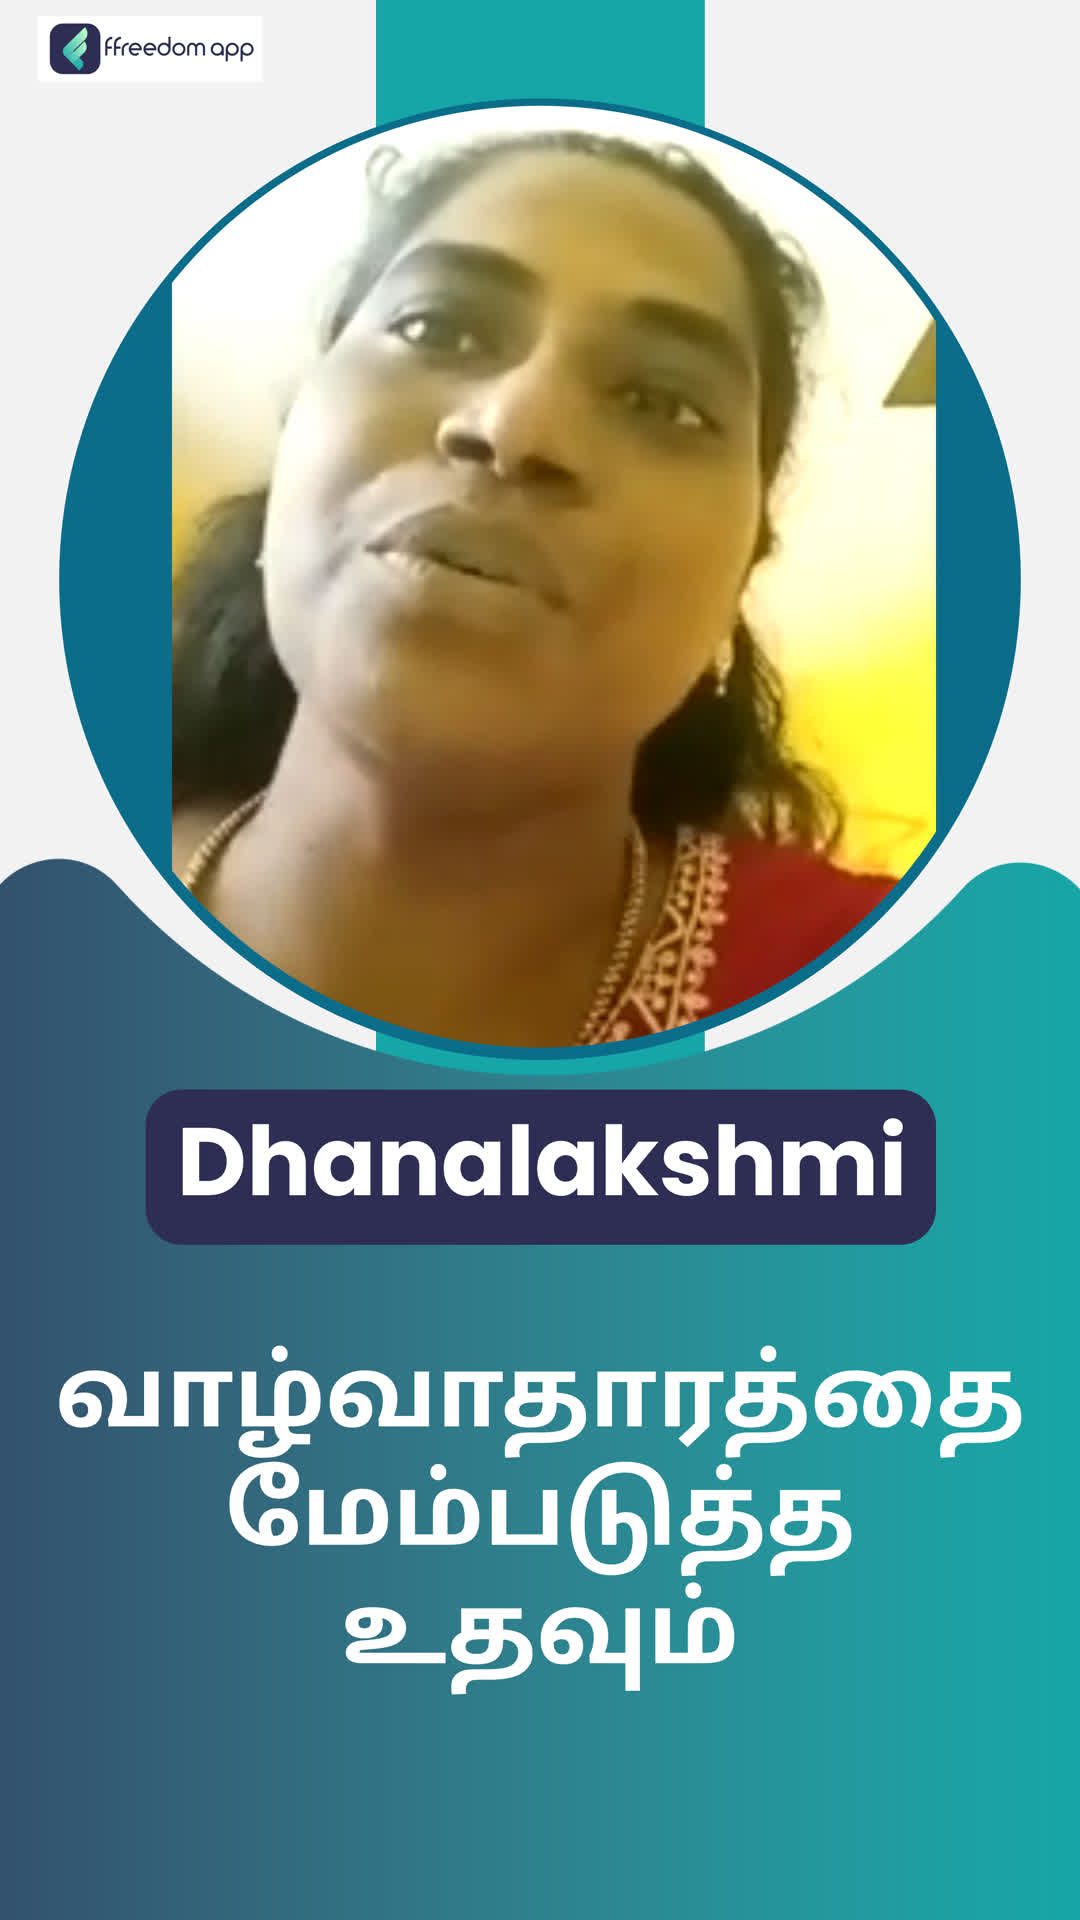 Dhanalakshmi's Honest Review of ffreedom app - Chennai ,Tamil Nadu